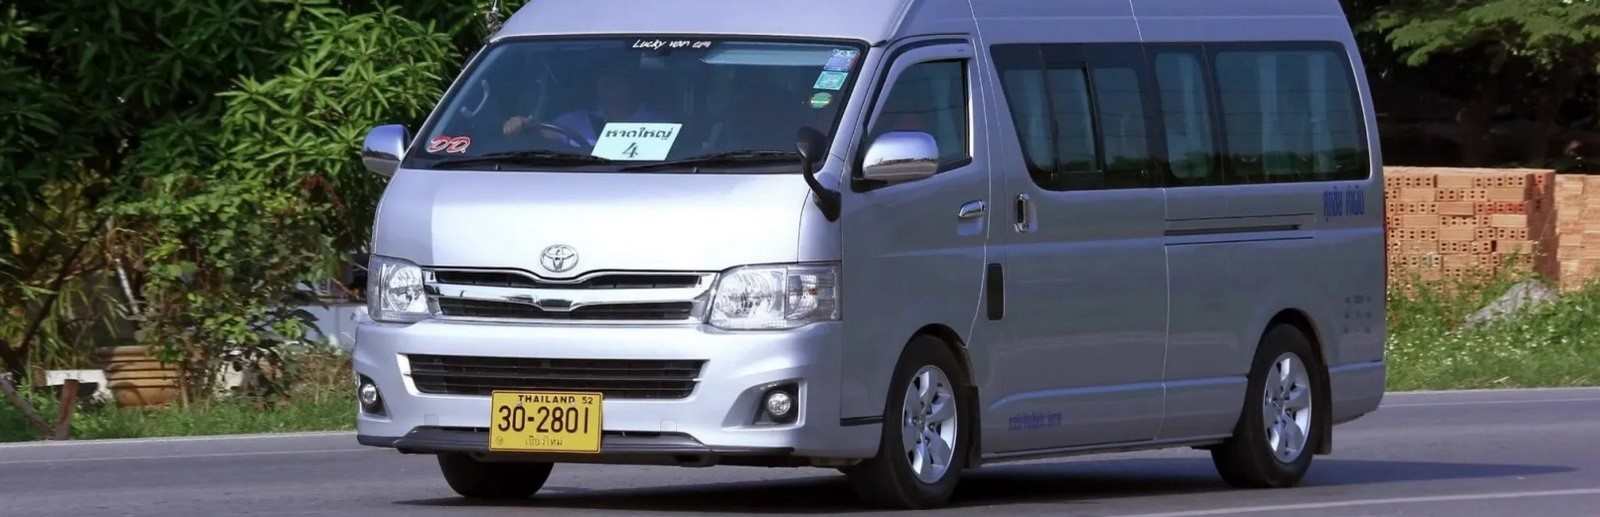 Voyager en Thaïlande en minibus.jpg